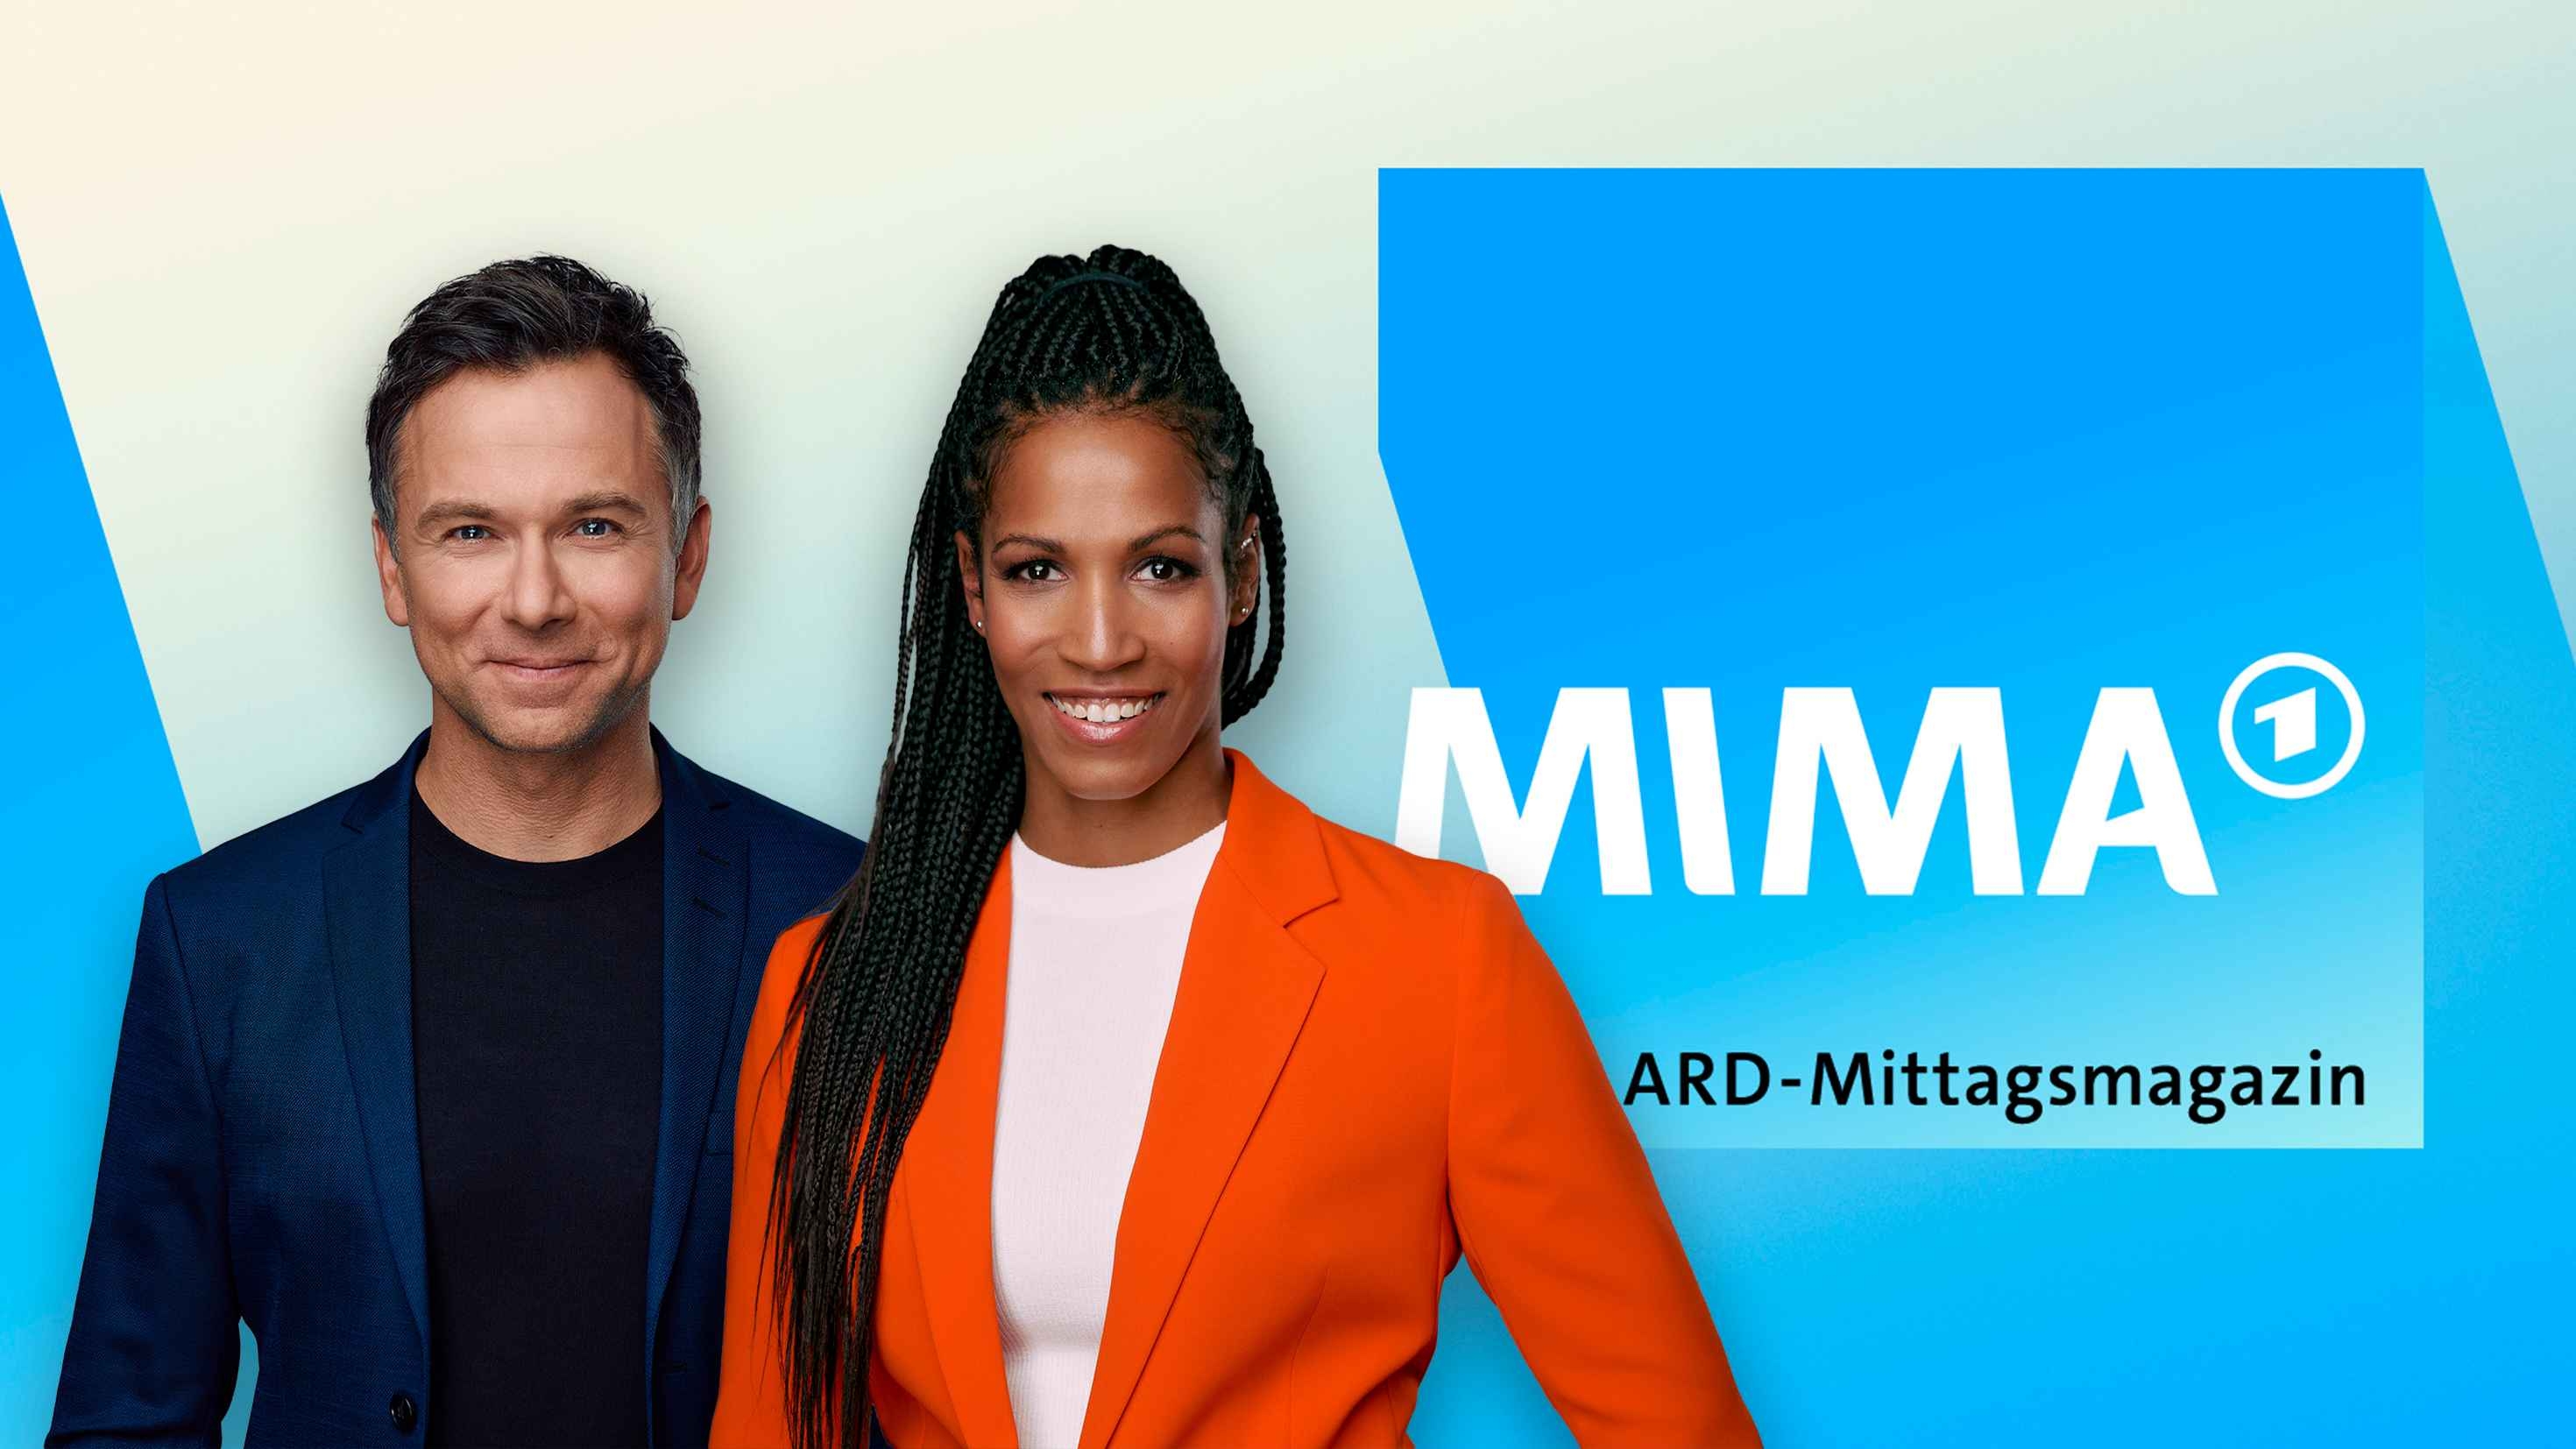 Das neue „ARD-Mittagsmagazin“: Weltlage, Dialog, Perspektivvielfalt